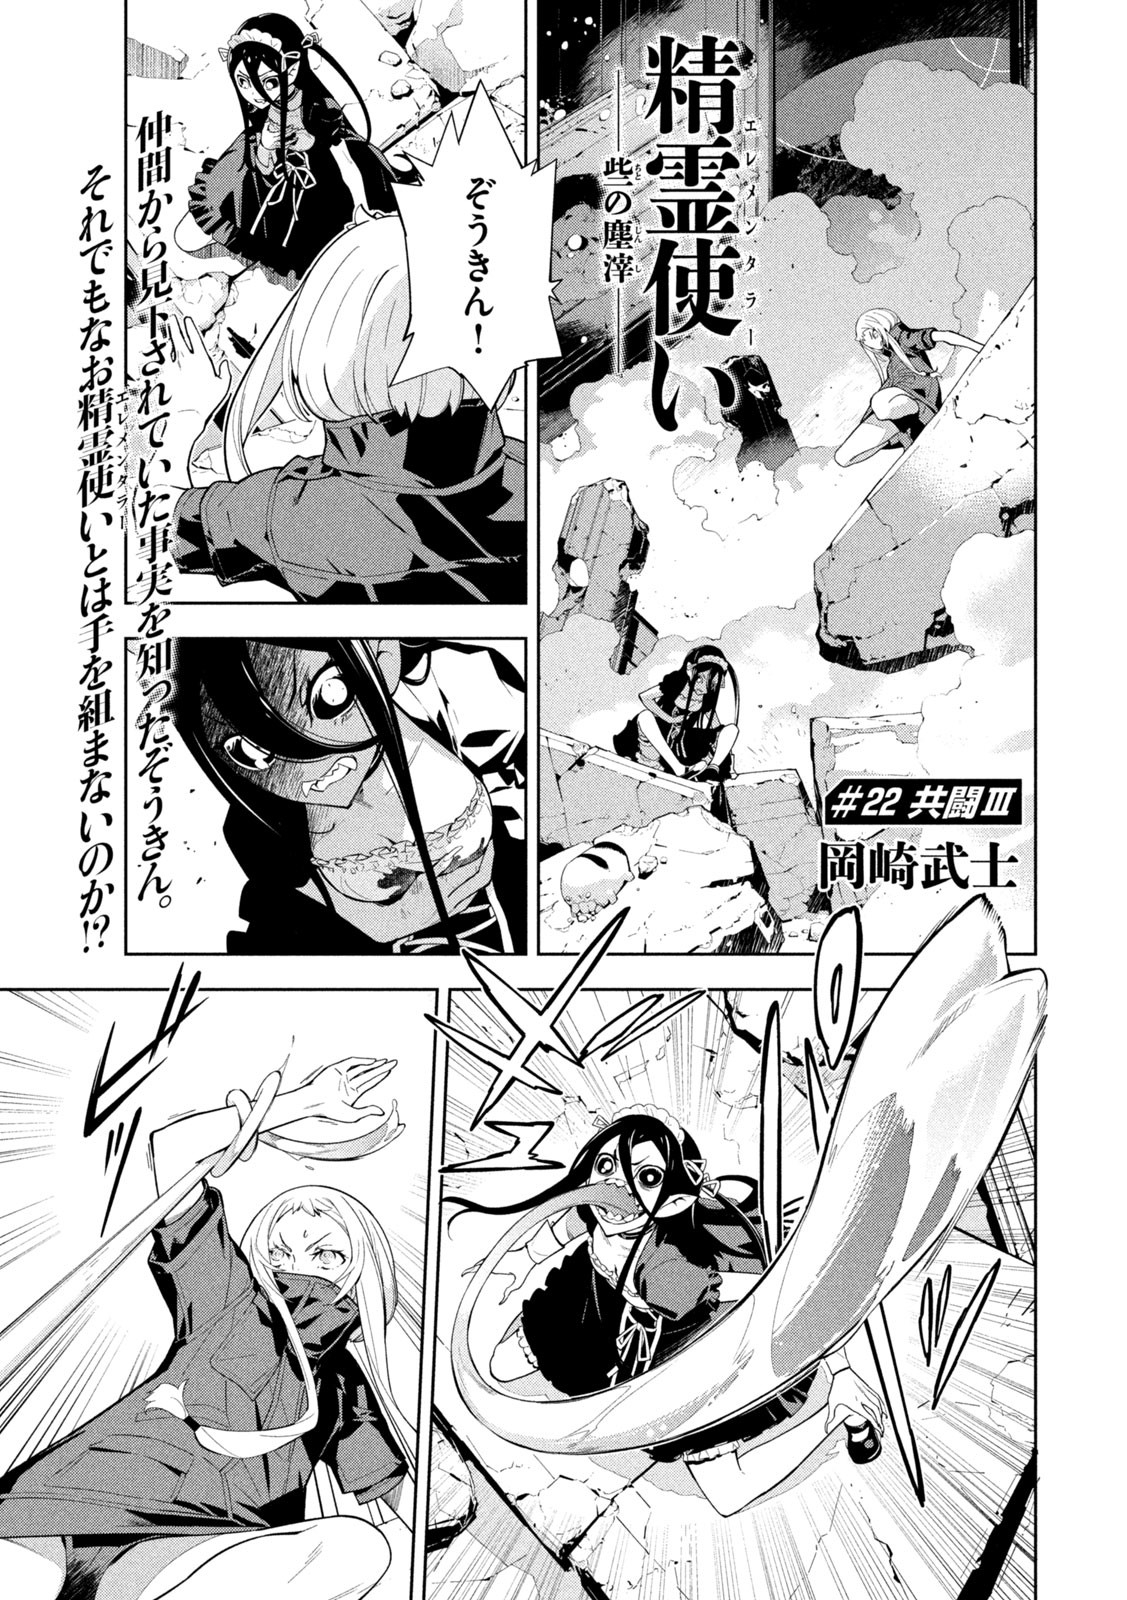 Seirei Tsukai – Chito no Jinshi - Chapter 22 - Page 1